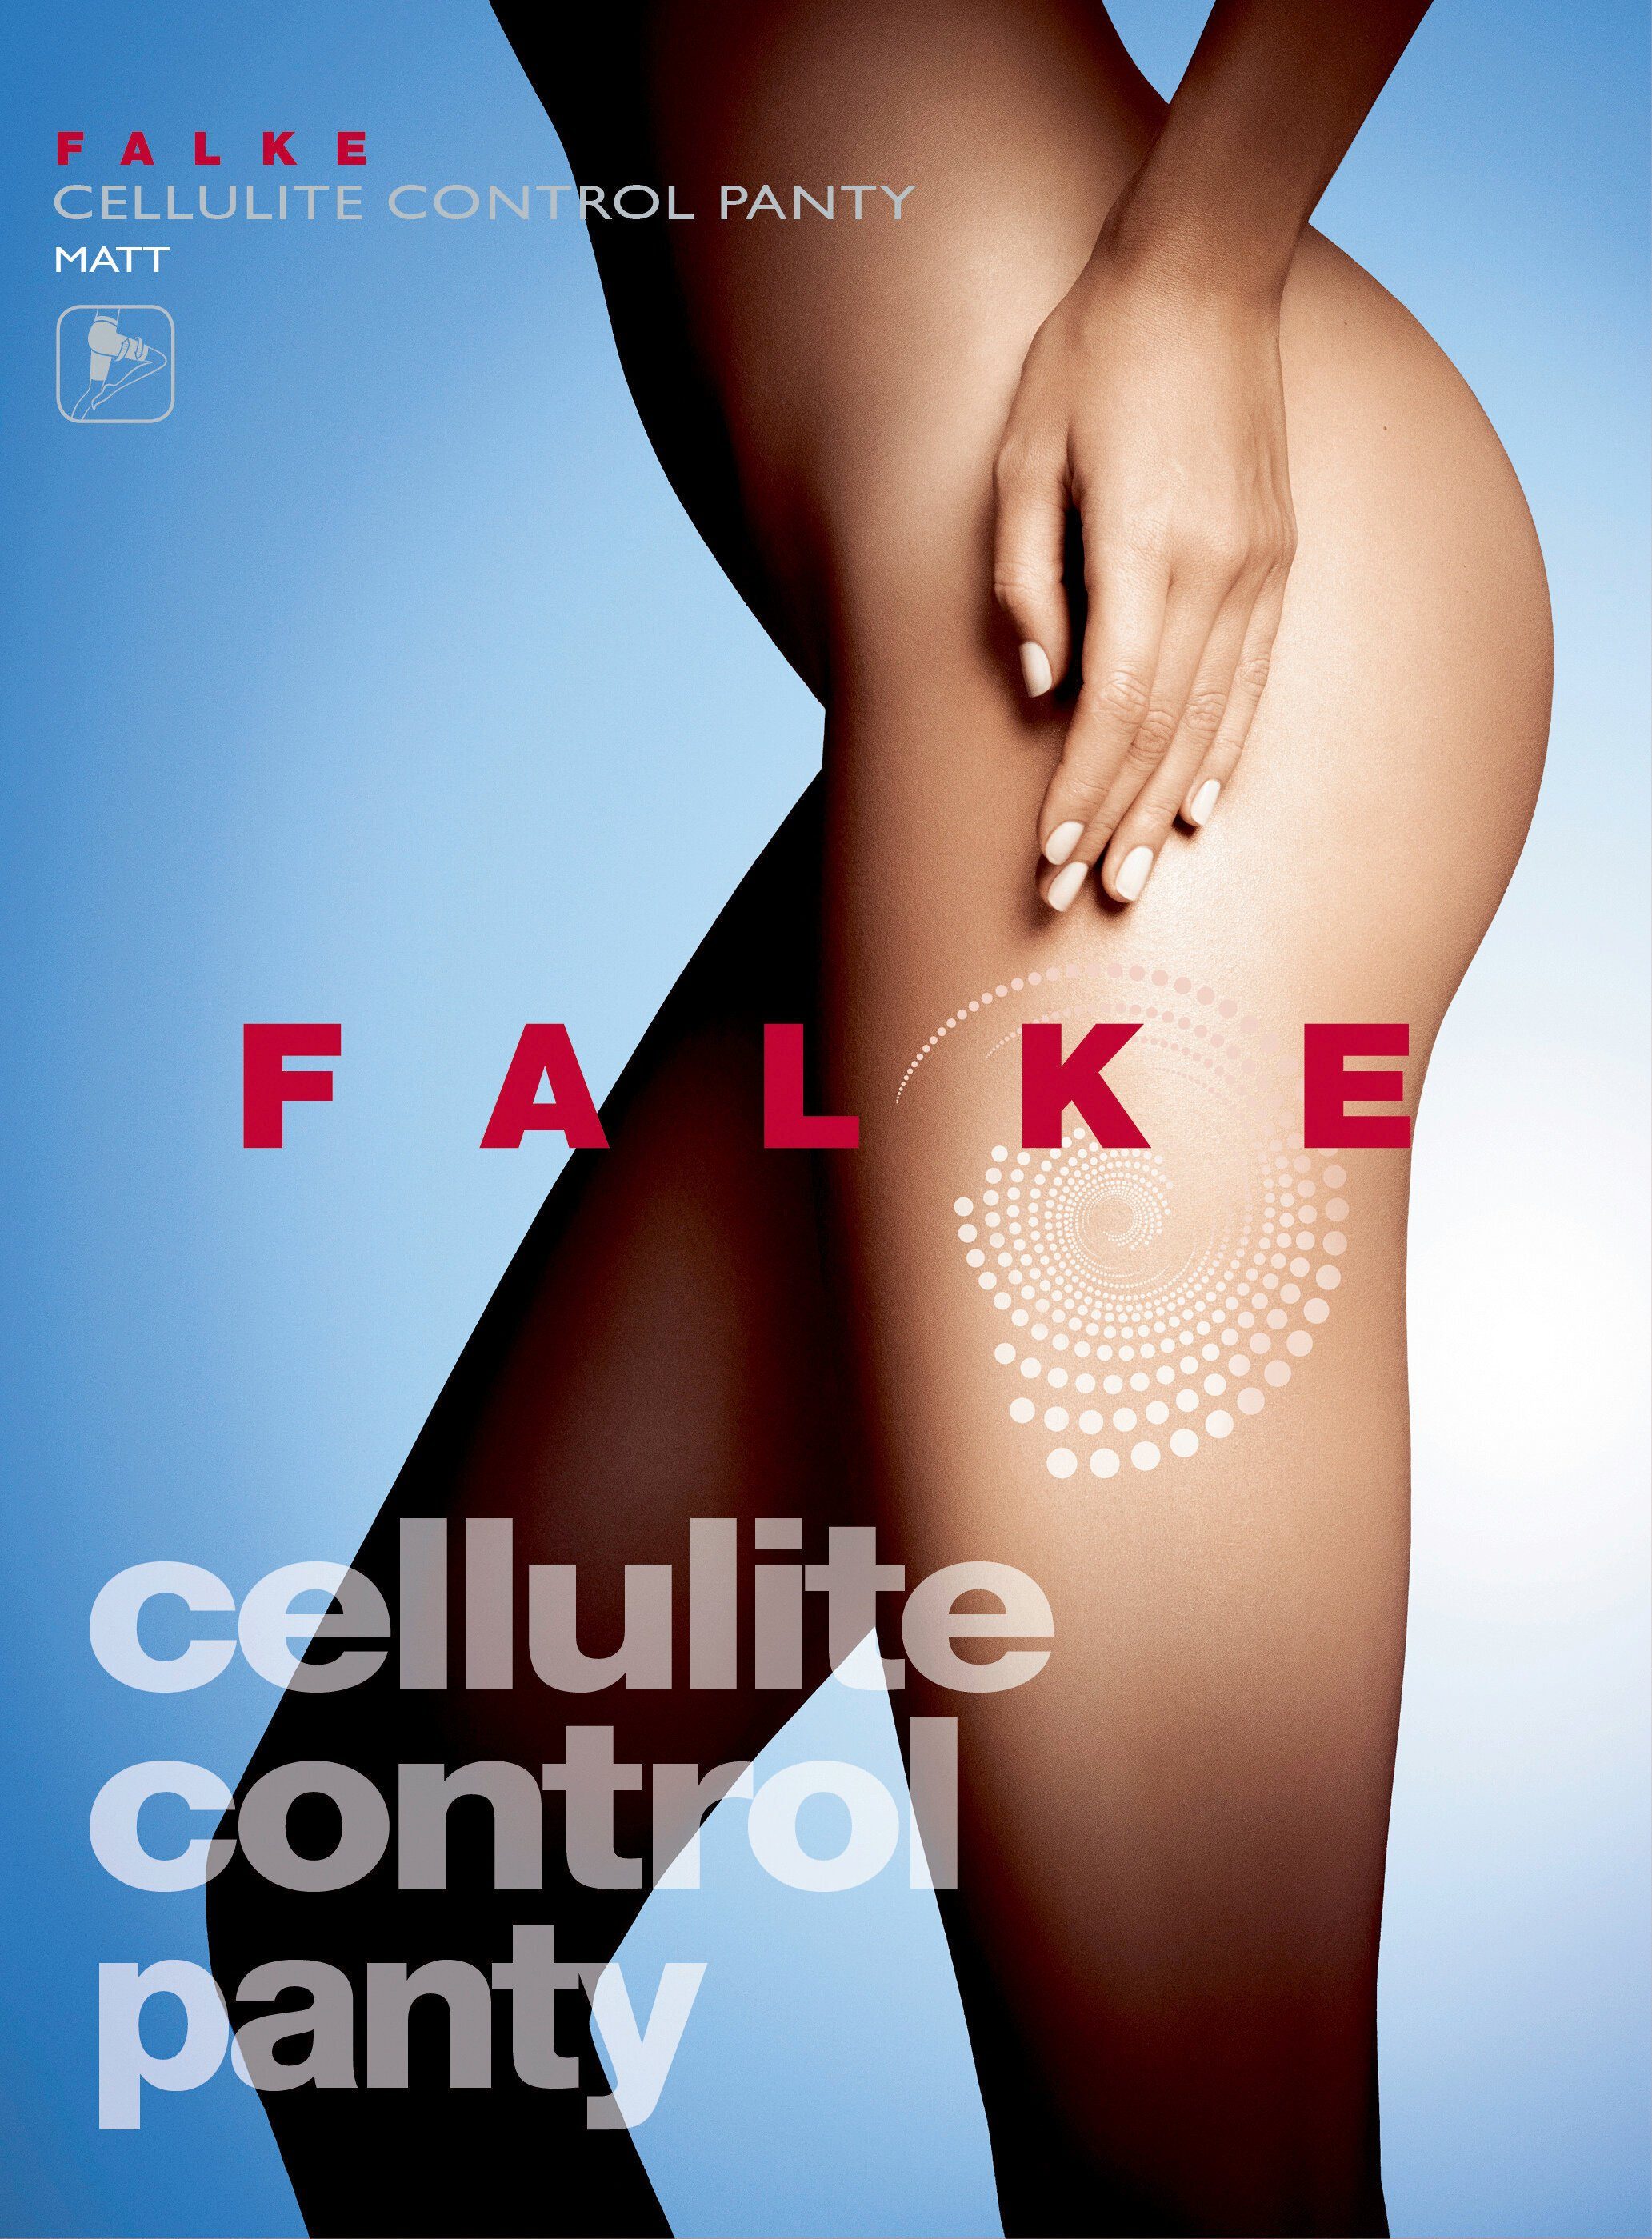 Control wirkt St) (1 powder FALKE (4069) DEN gegen Cellulite Cellulite dreifach 80 Feinstrumpfleggings